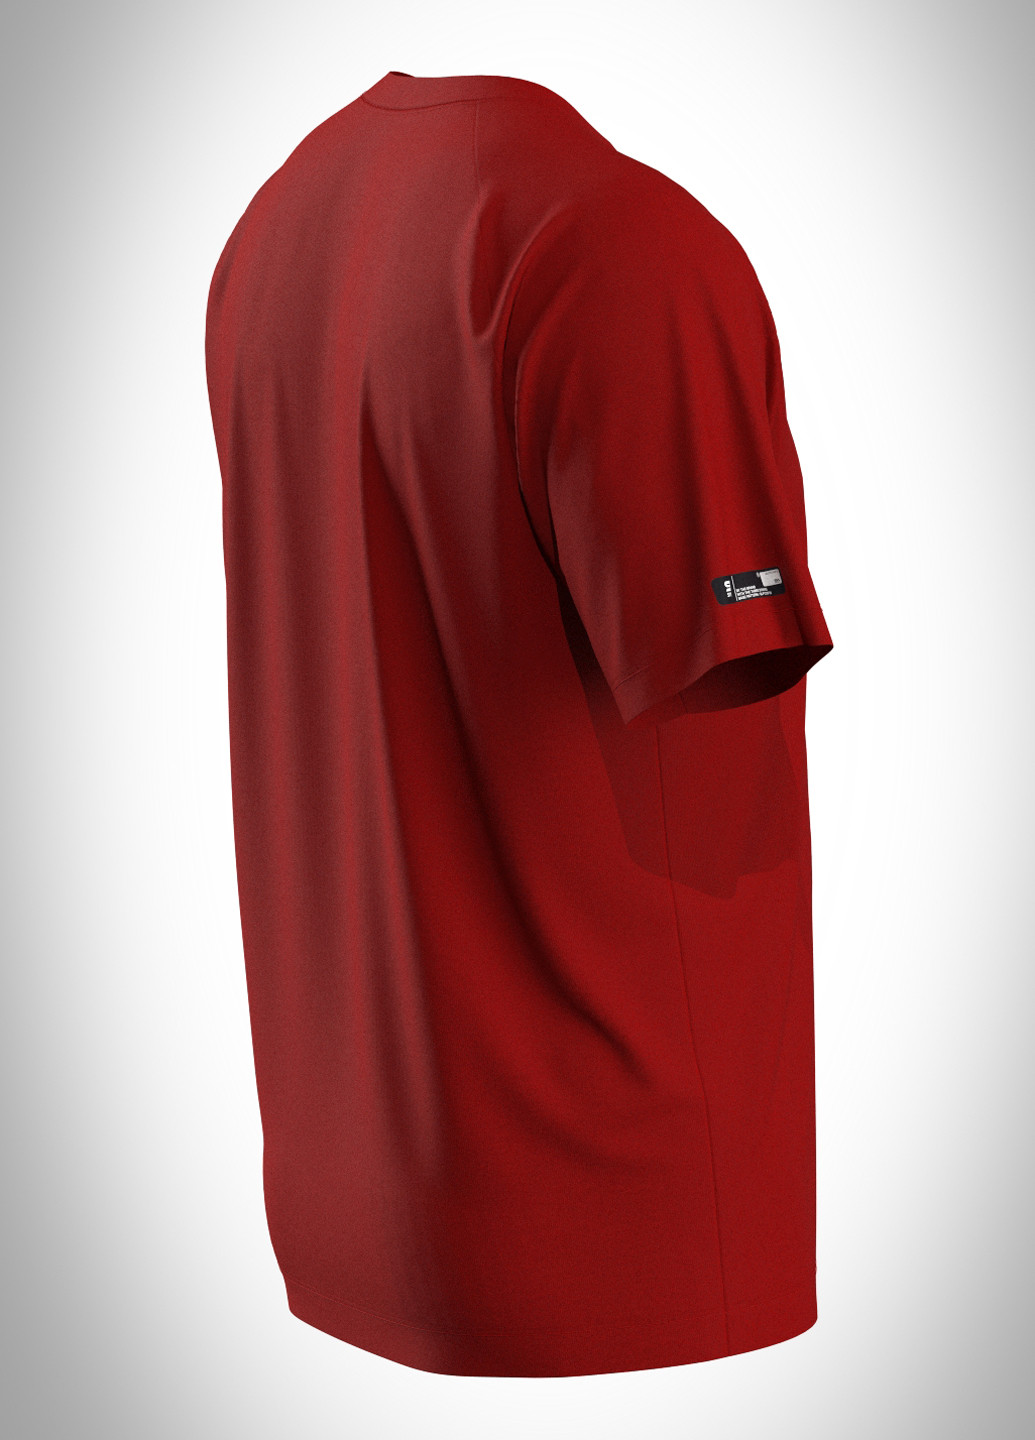 Красная футболка SA-sport